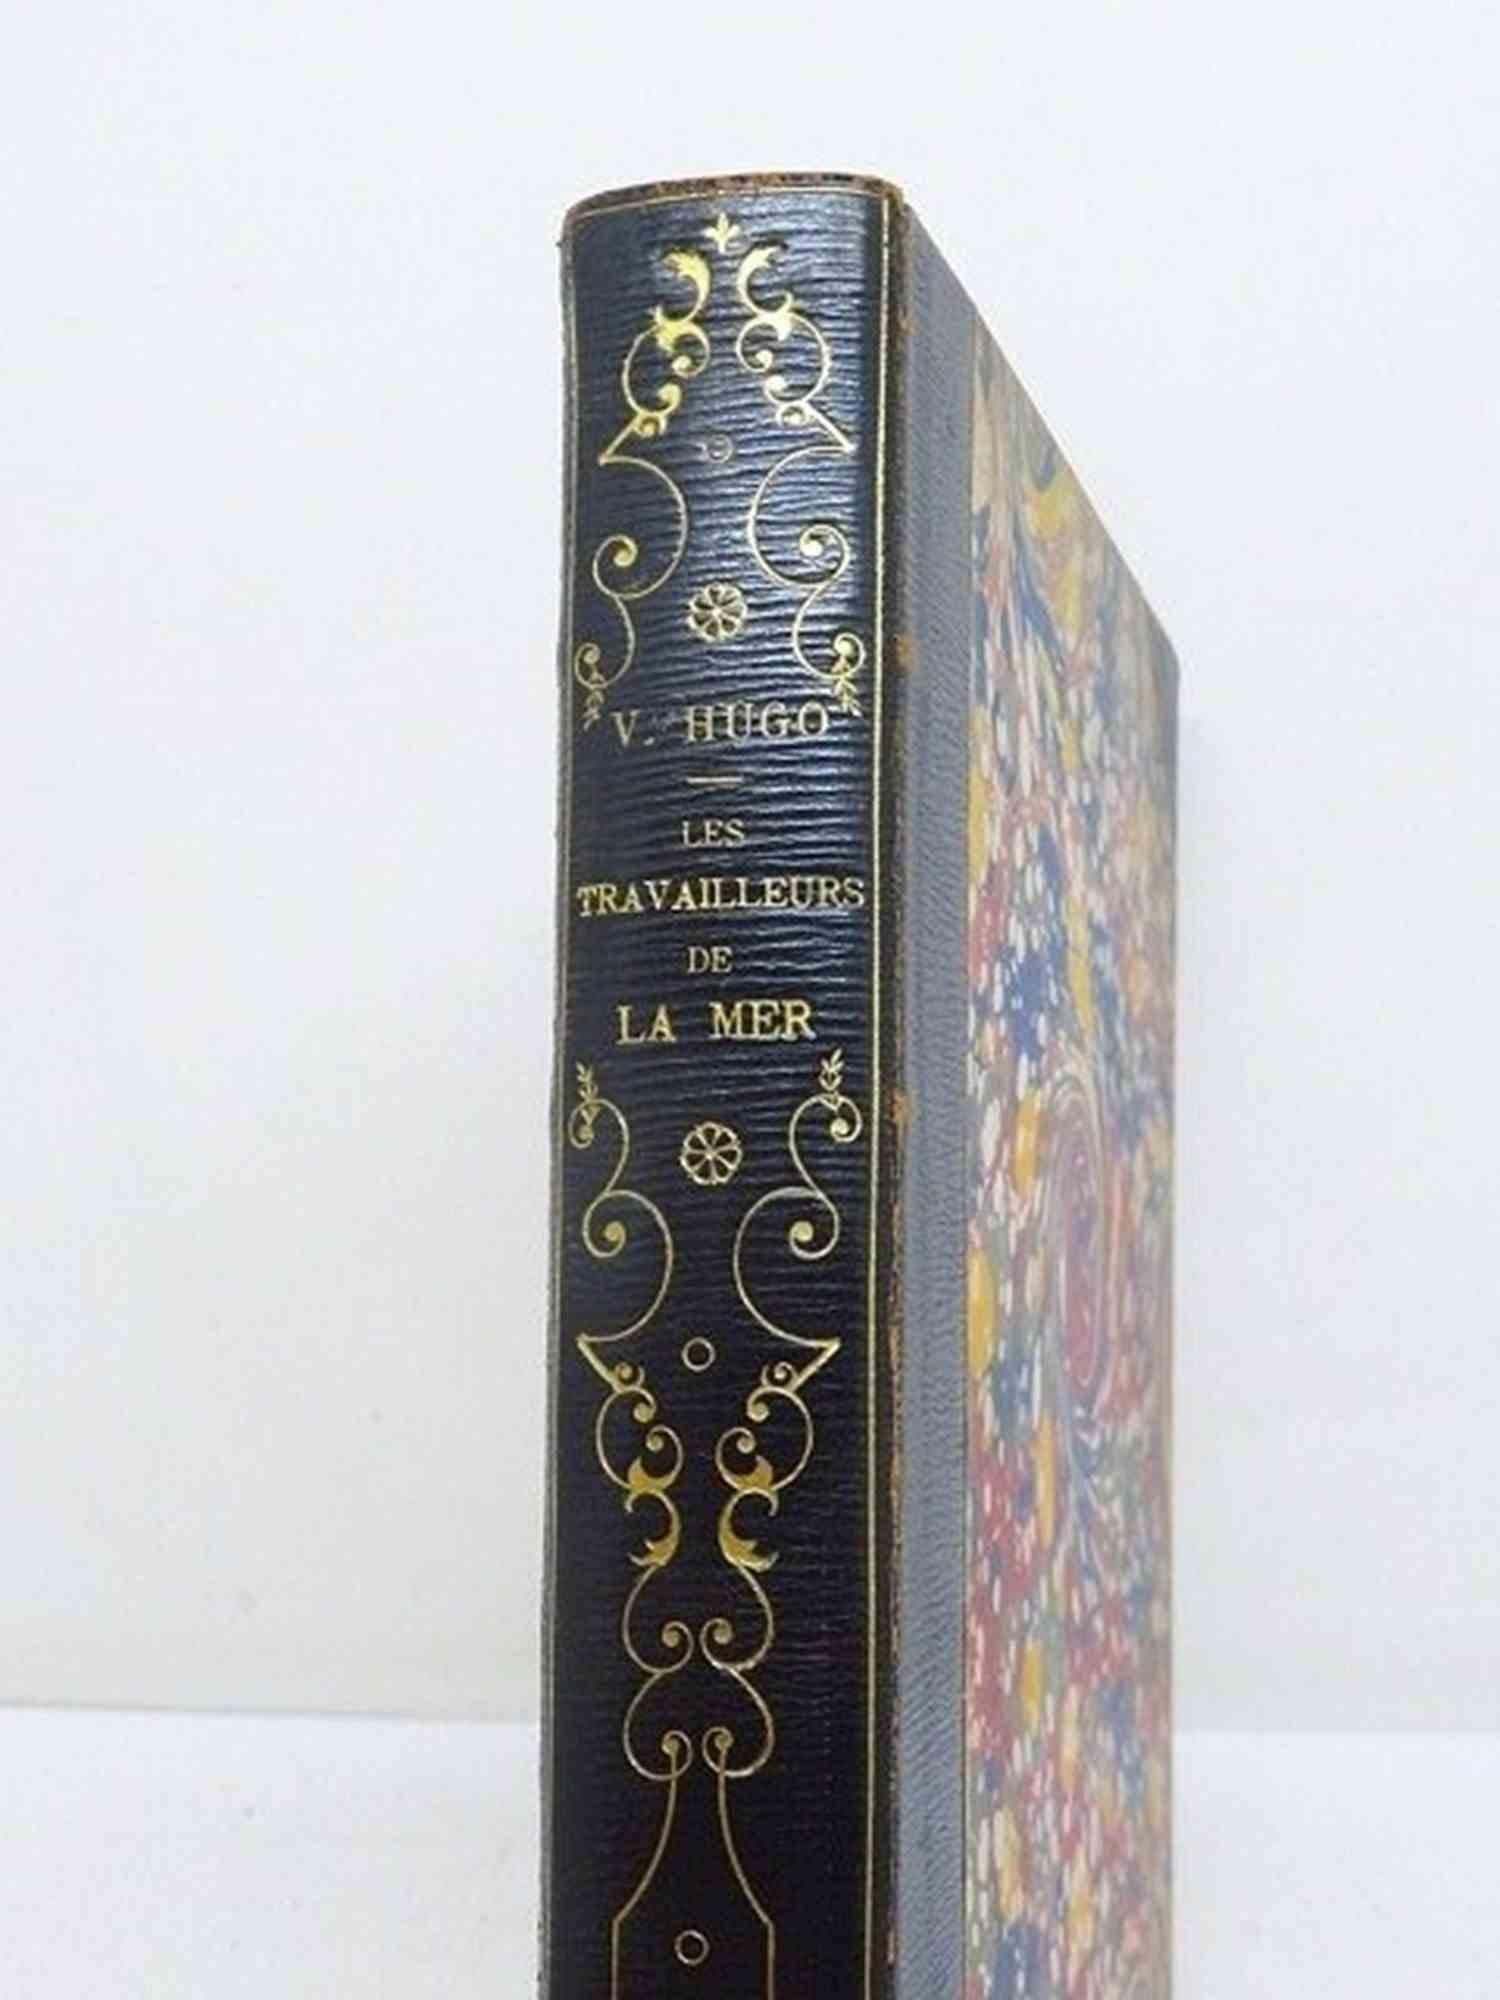 Les Travailleurs de la Mer - Rare Book by Victor Hugo - 1866 For Sale 3